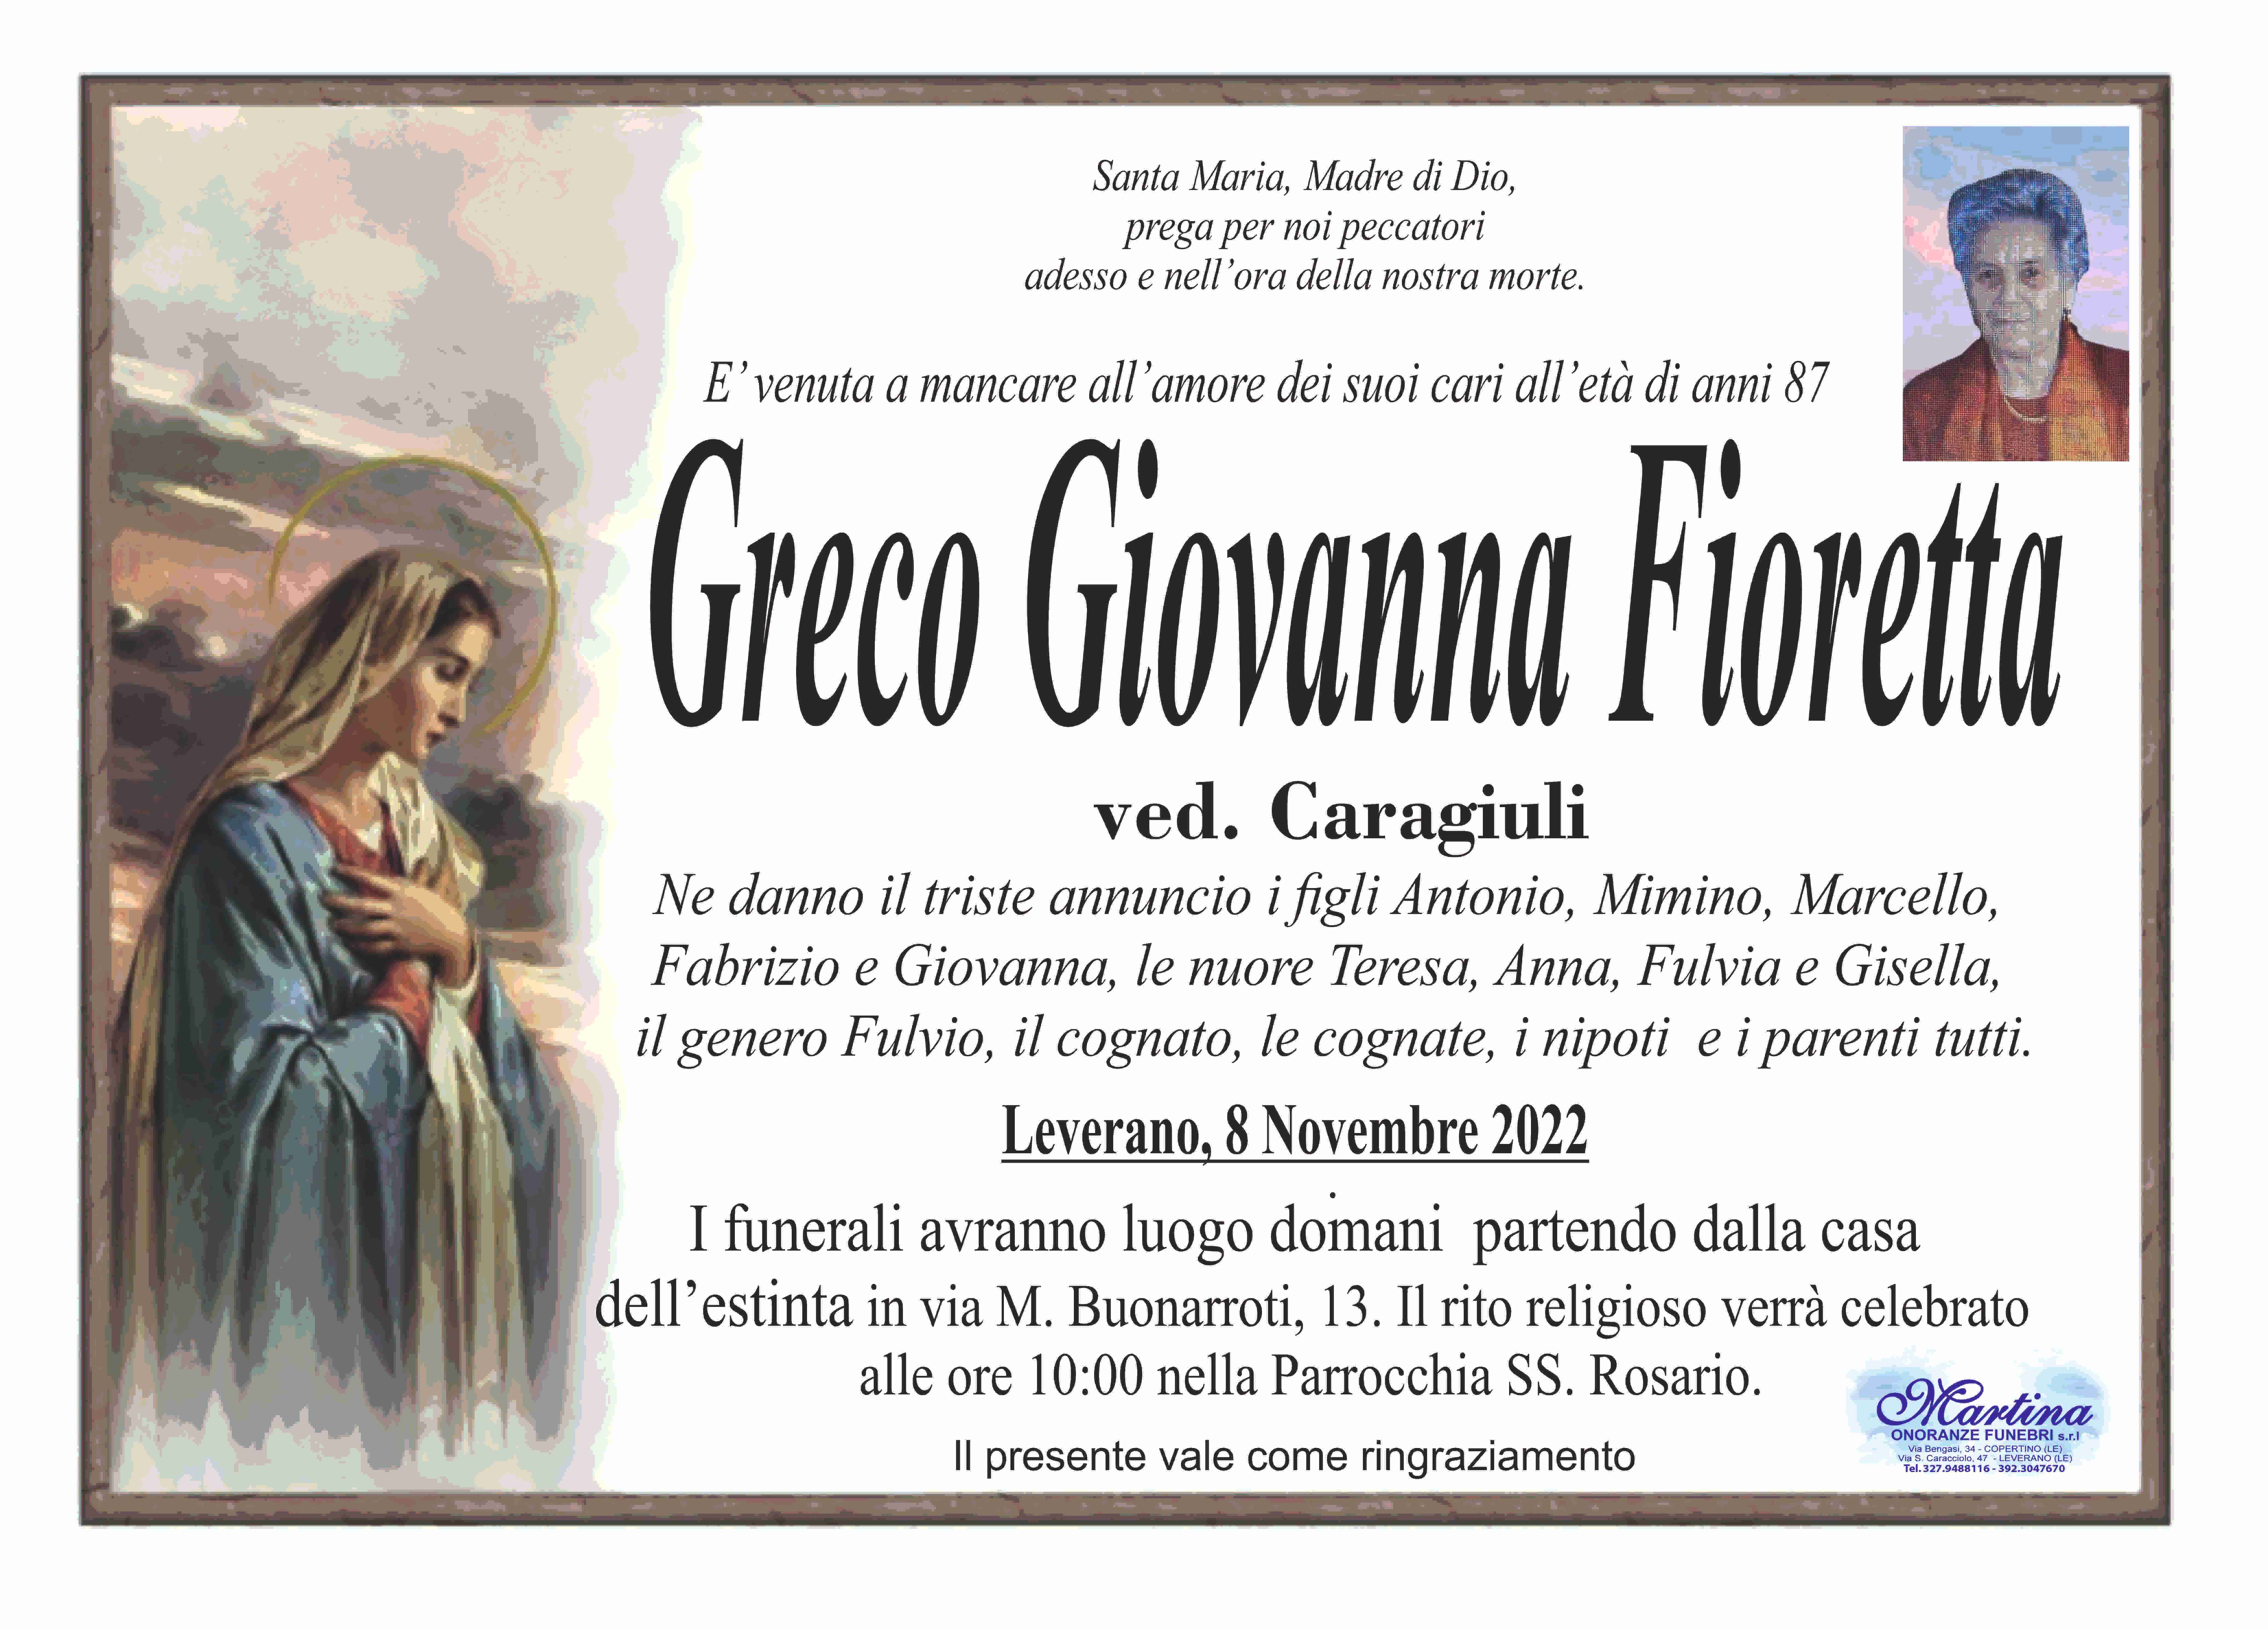 Giovanna Fioretta Greco